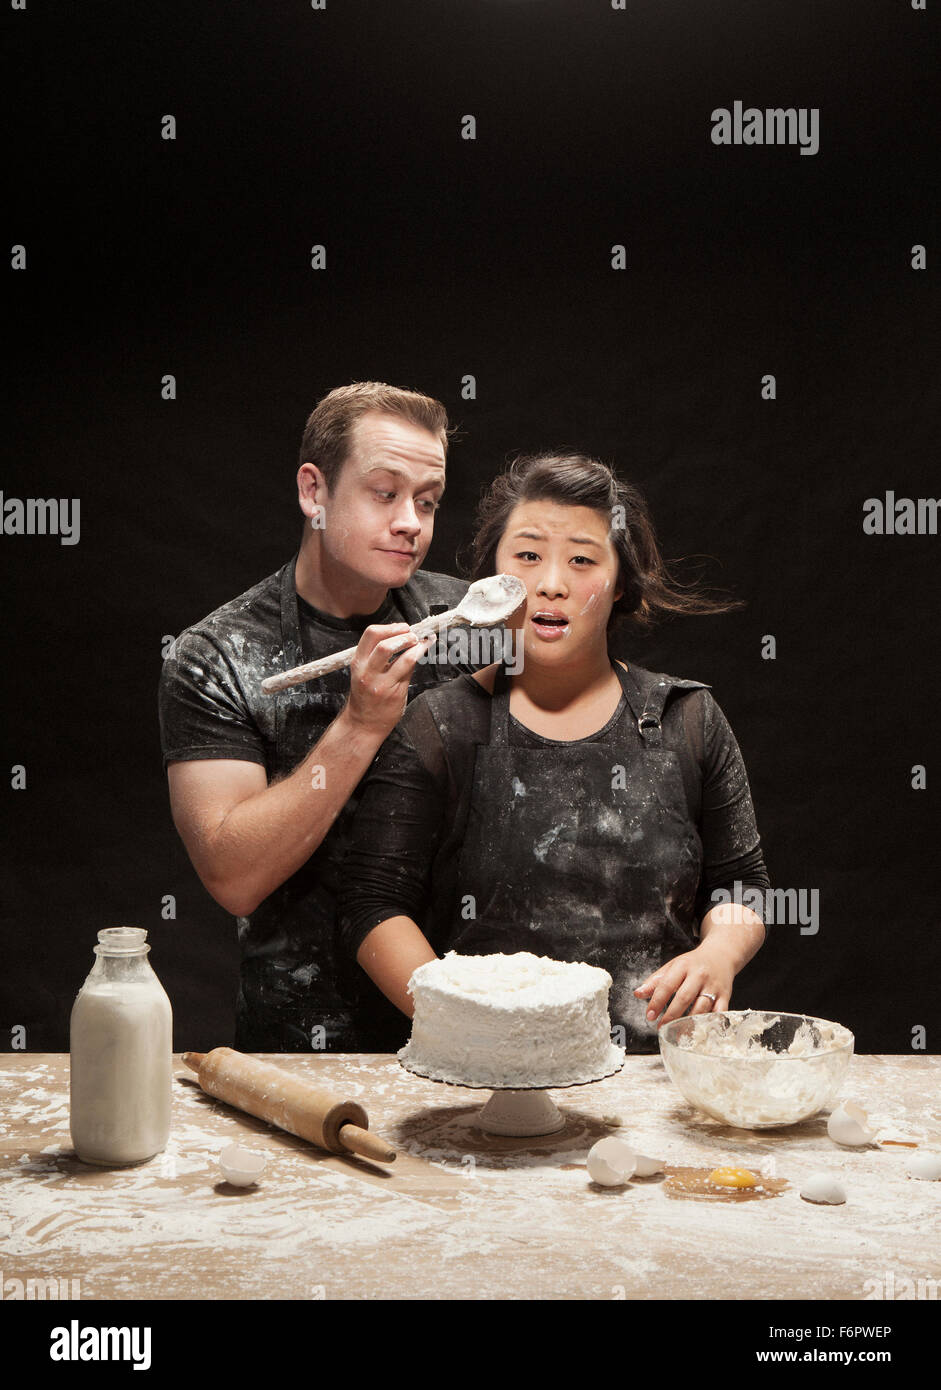 Messy couple baking cake Stock Photo